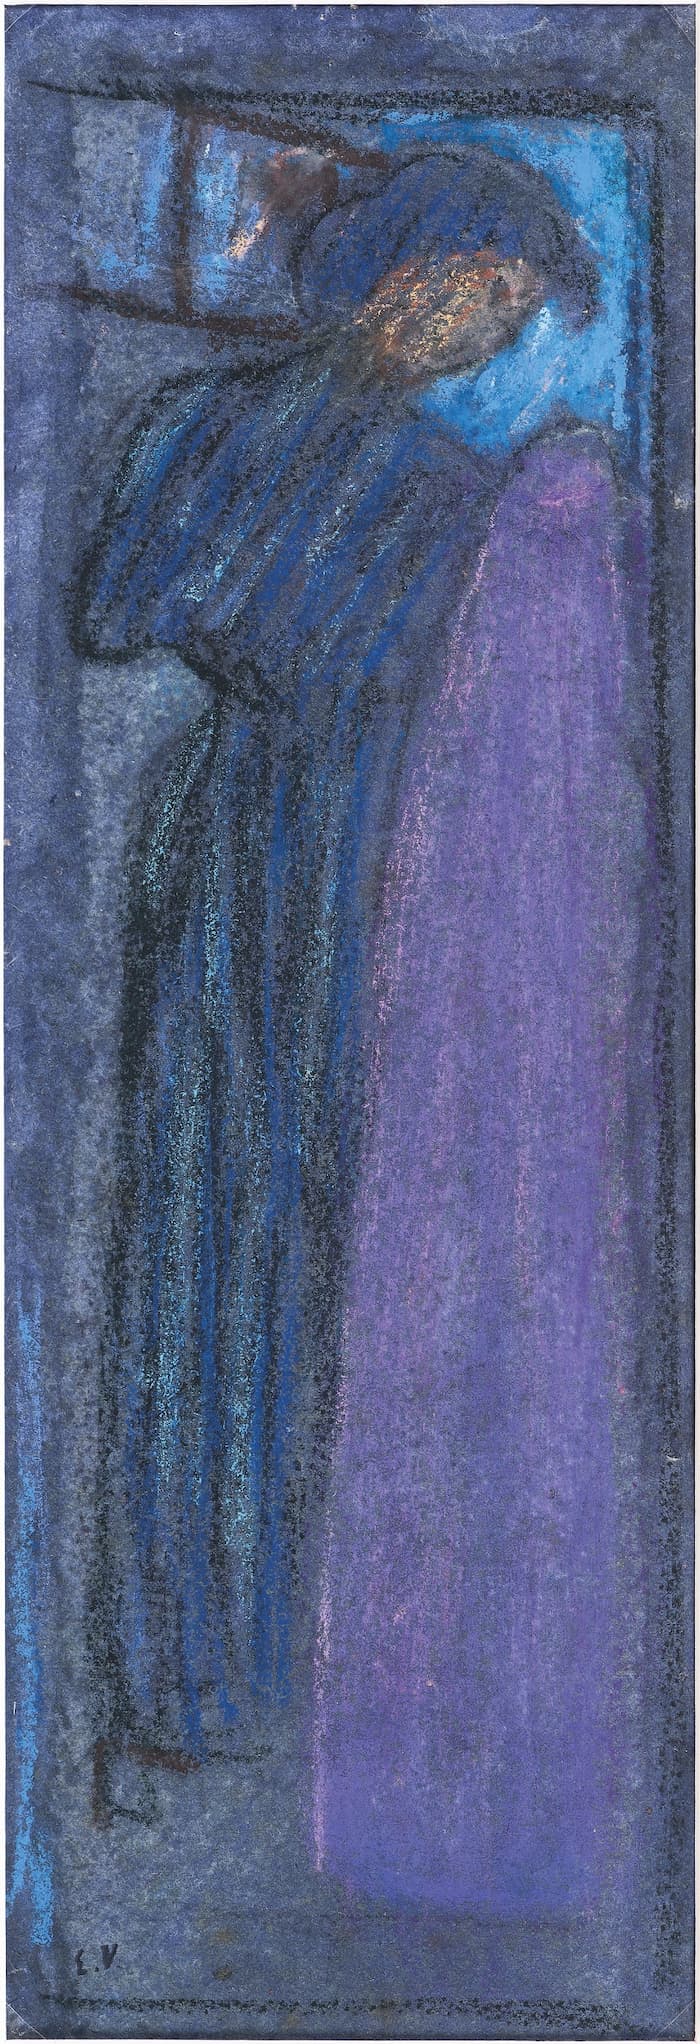 Edouard VUILLARD, La couturière à l’étoffe mauve, effet de nuit, 1890